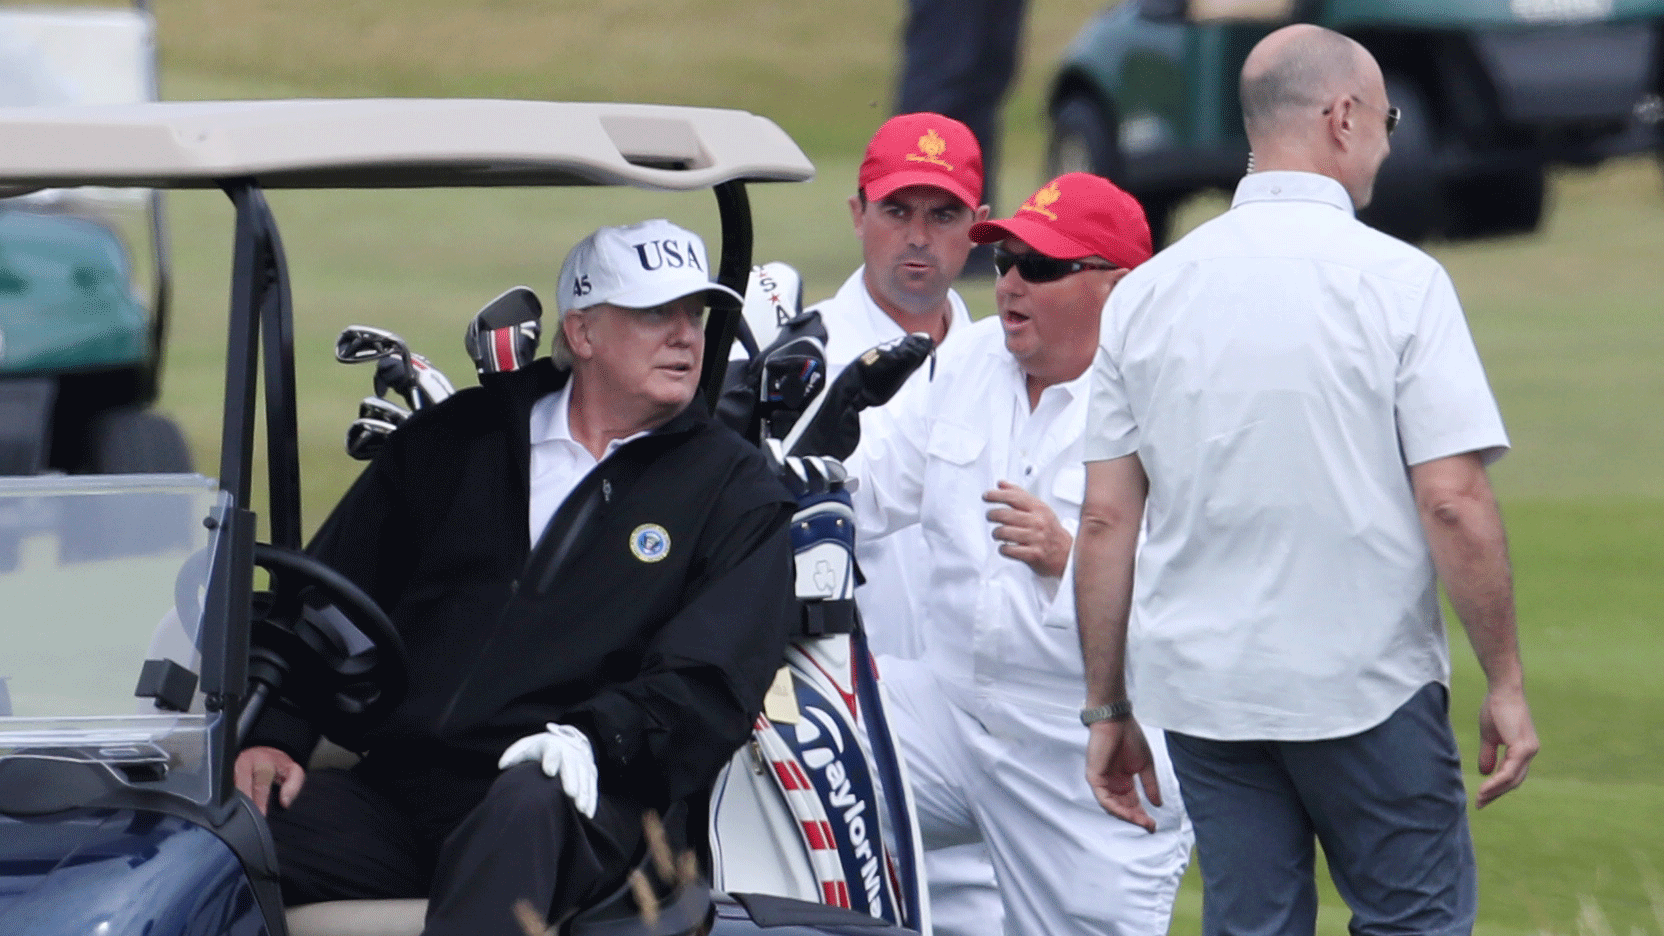 Donald Trump climbs into his golf cart.